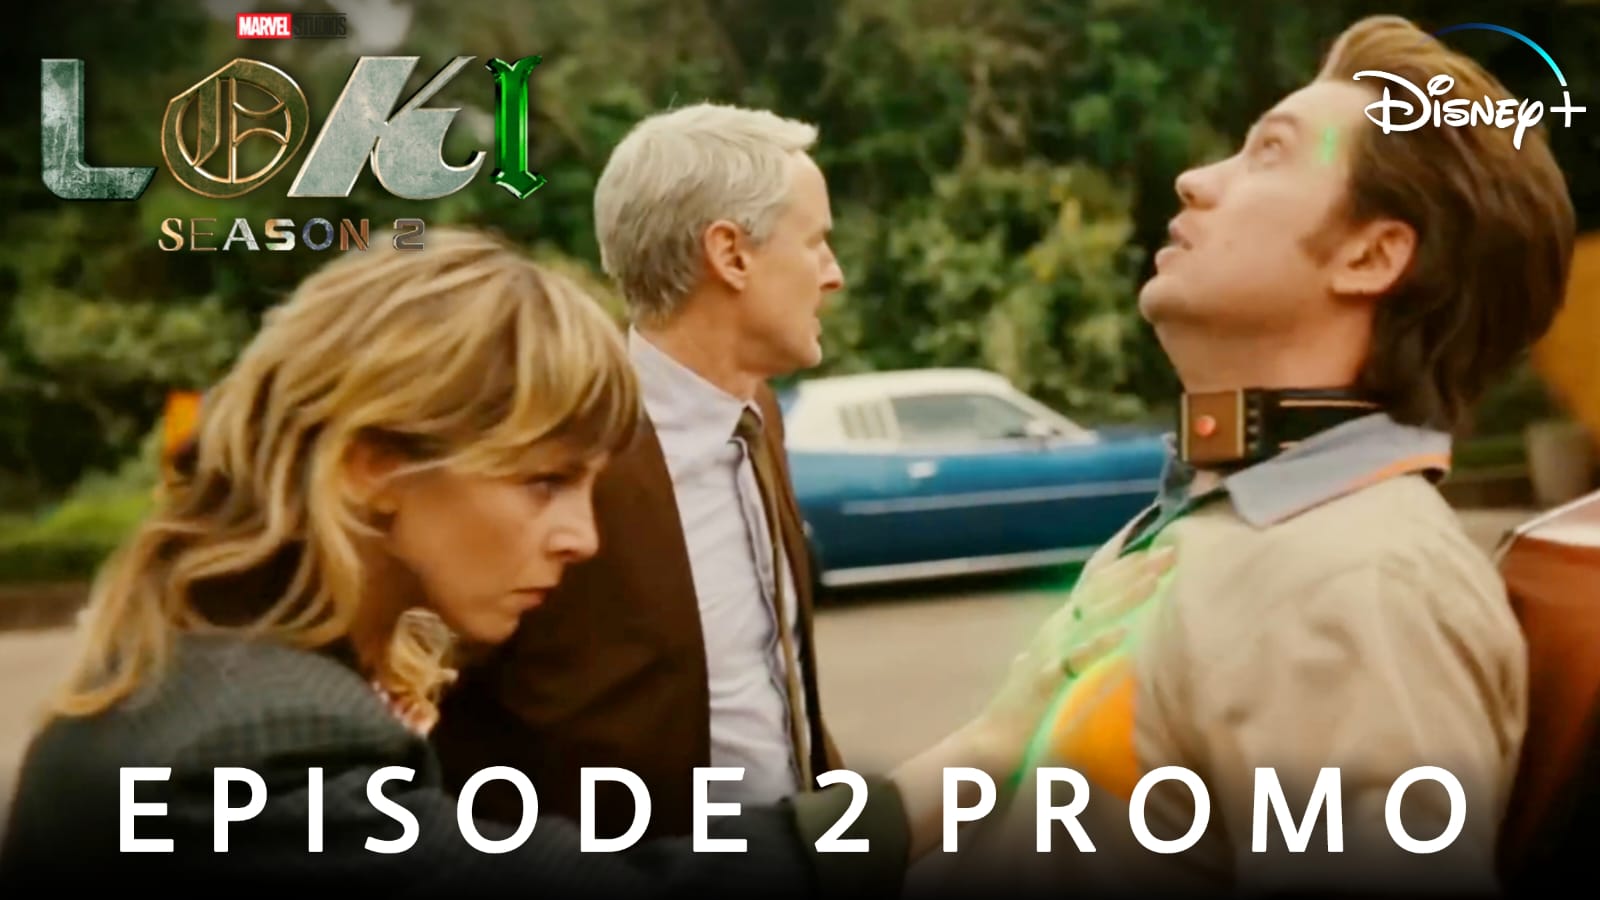 Loki Season 2 Episode 2 Promo